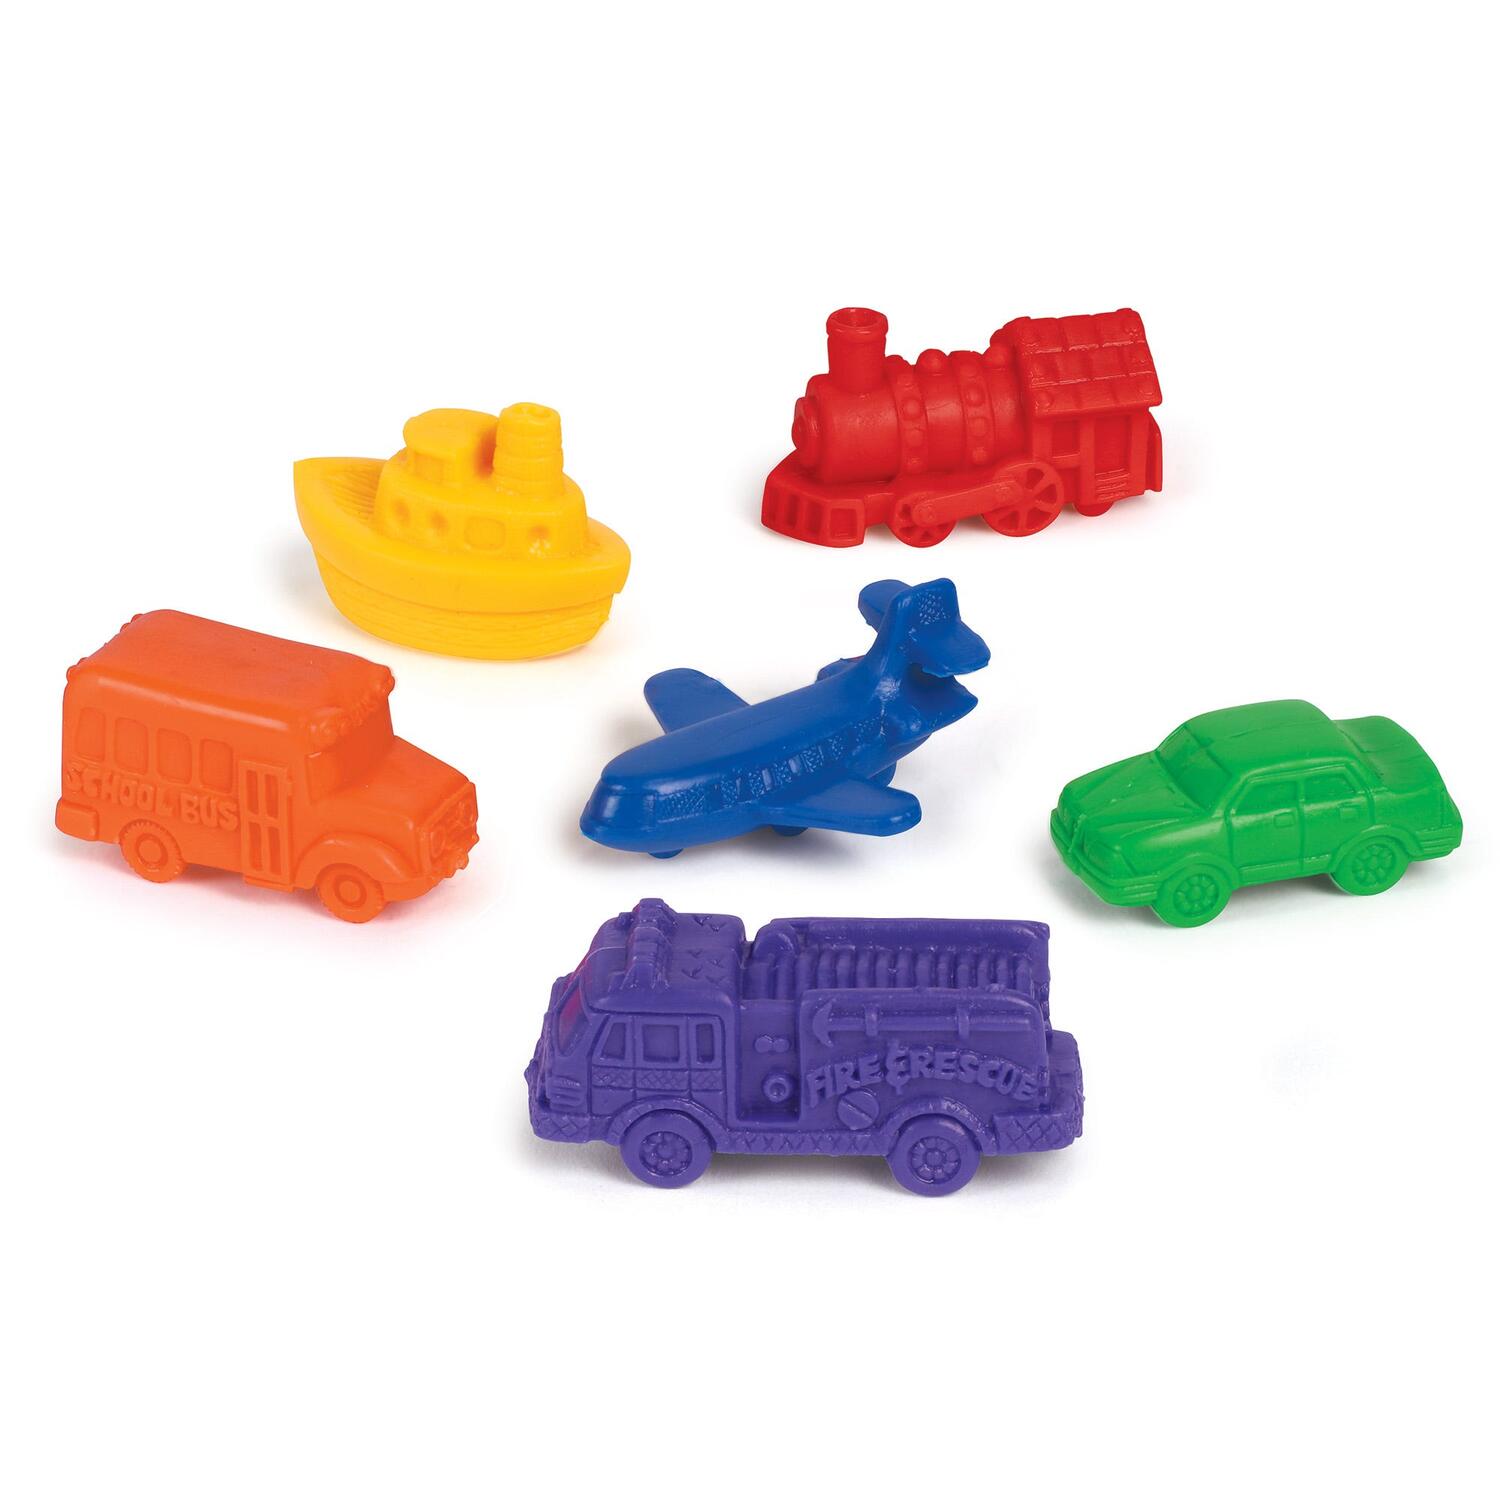 Mini vehicule pentru numarat - set 72 buc PlayLearn Toys